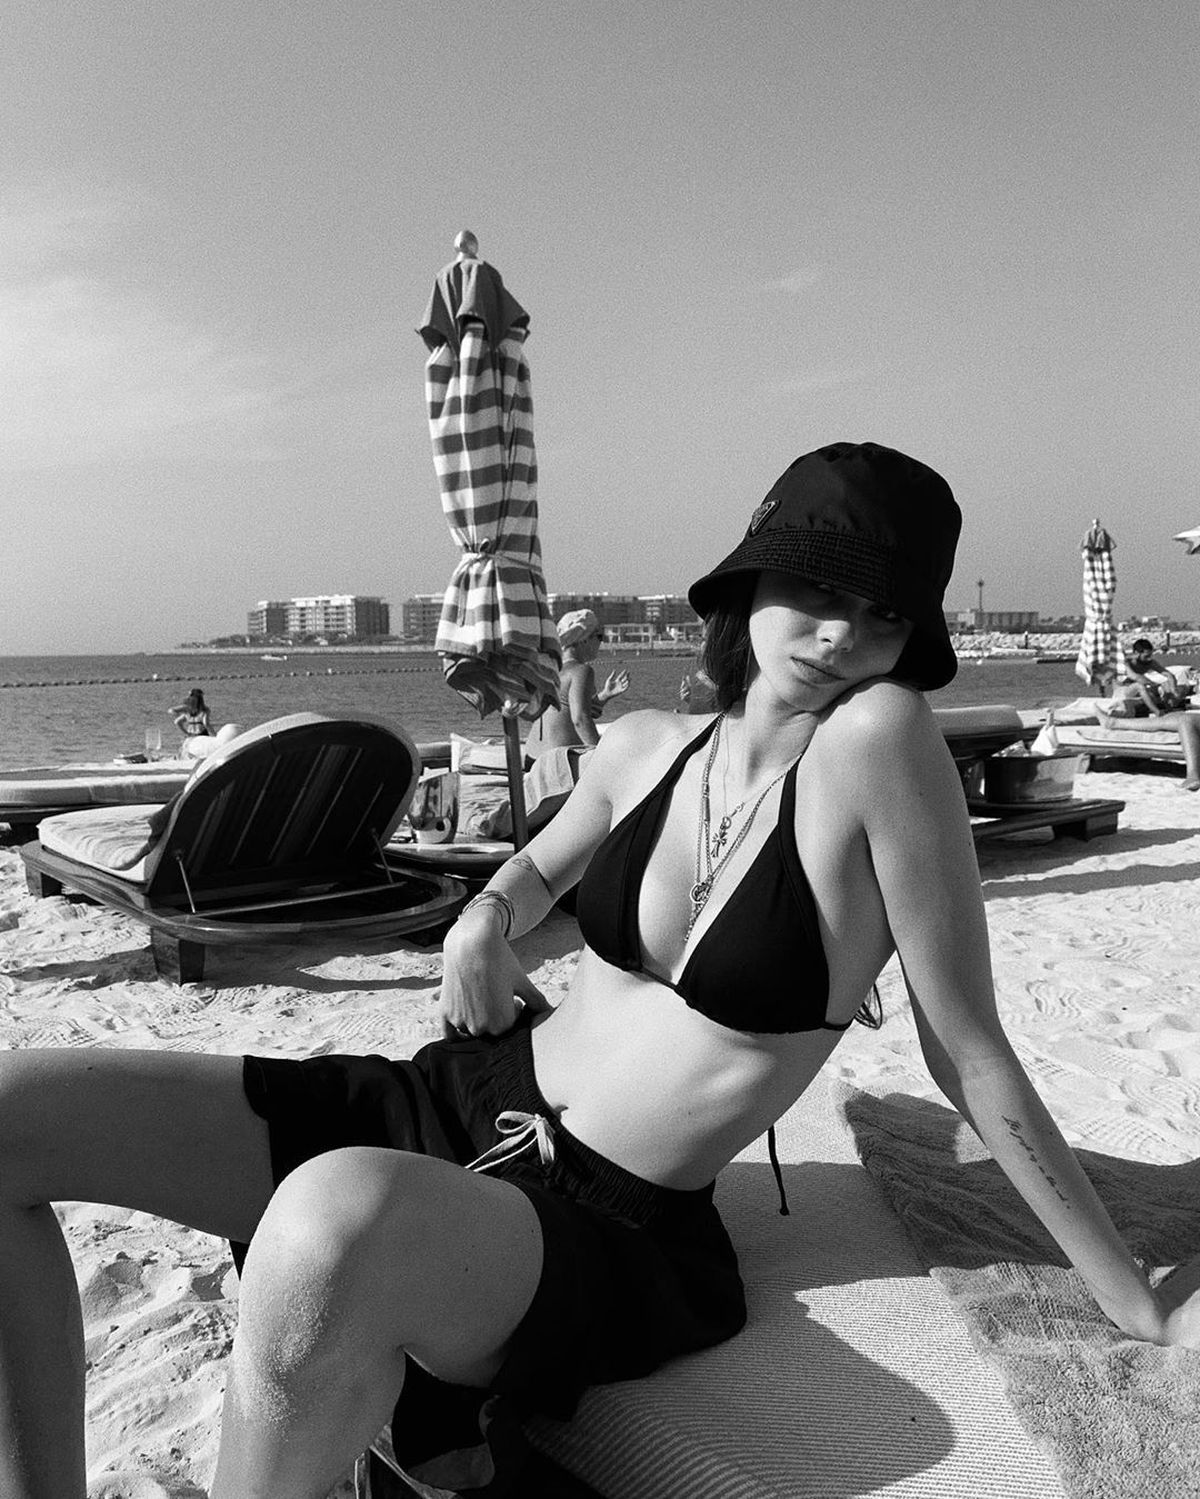 FOTO Rebecca Prodan în lenjerie intimă » Imaginile sexy postate de mama ei, Anamaria Prodan Reghecampf